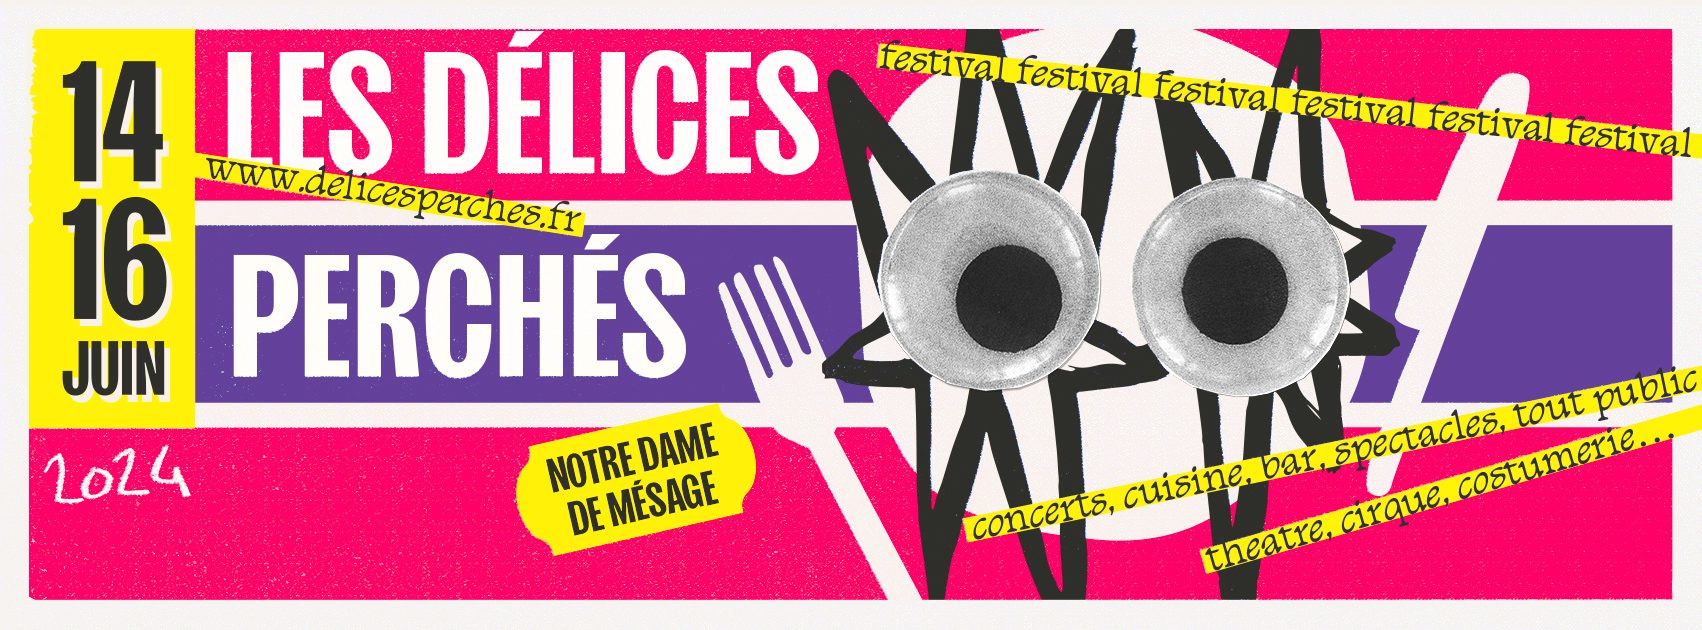 Festival Les Délices Perchés / Notre Dame de Mésage / Spectacles – Concerts – Cuisine